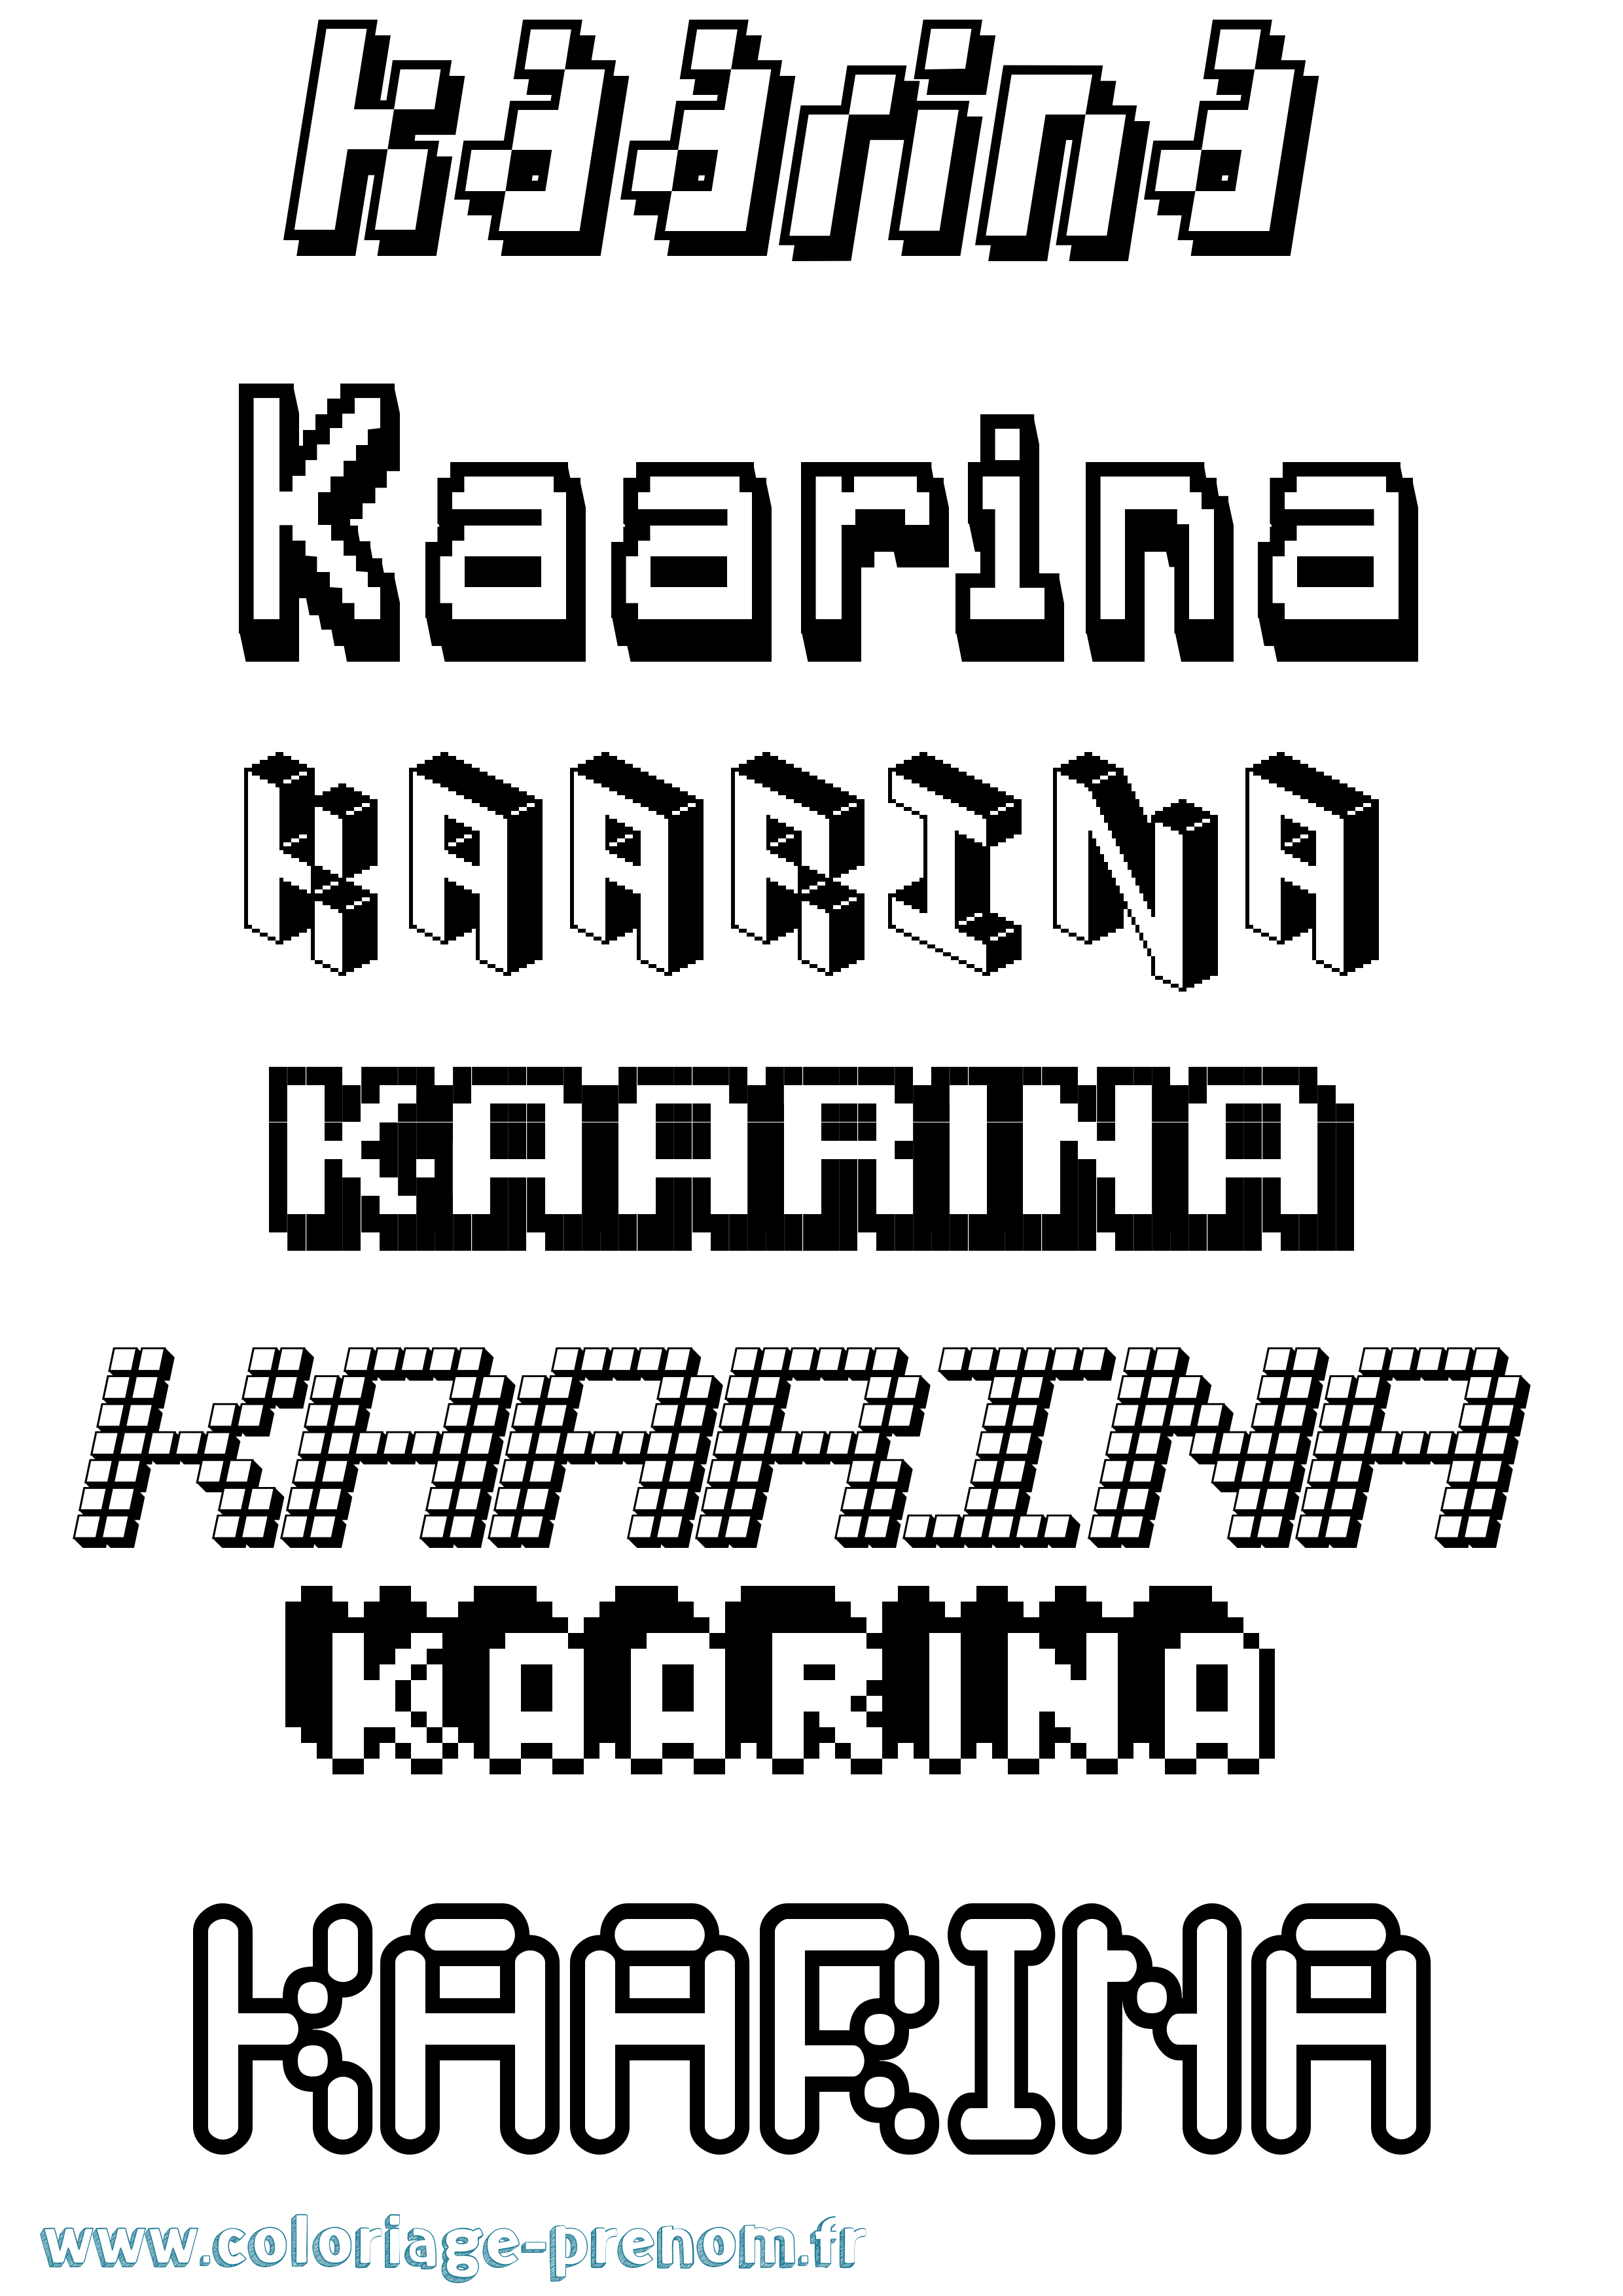 Coloriage prénom Kaarina Pixel